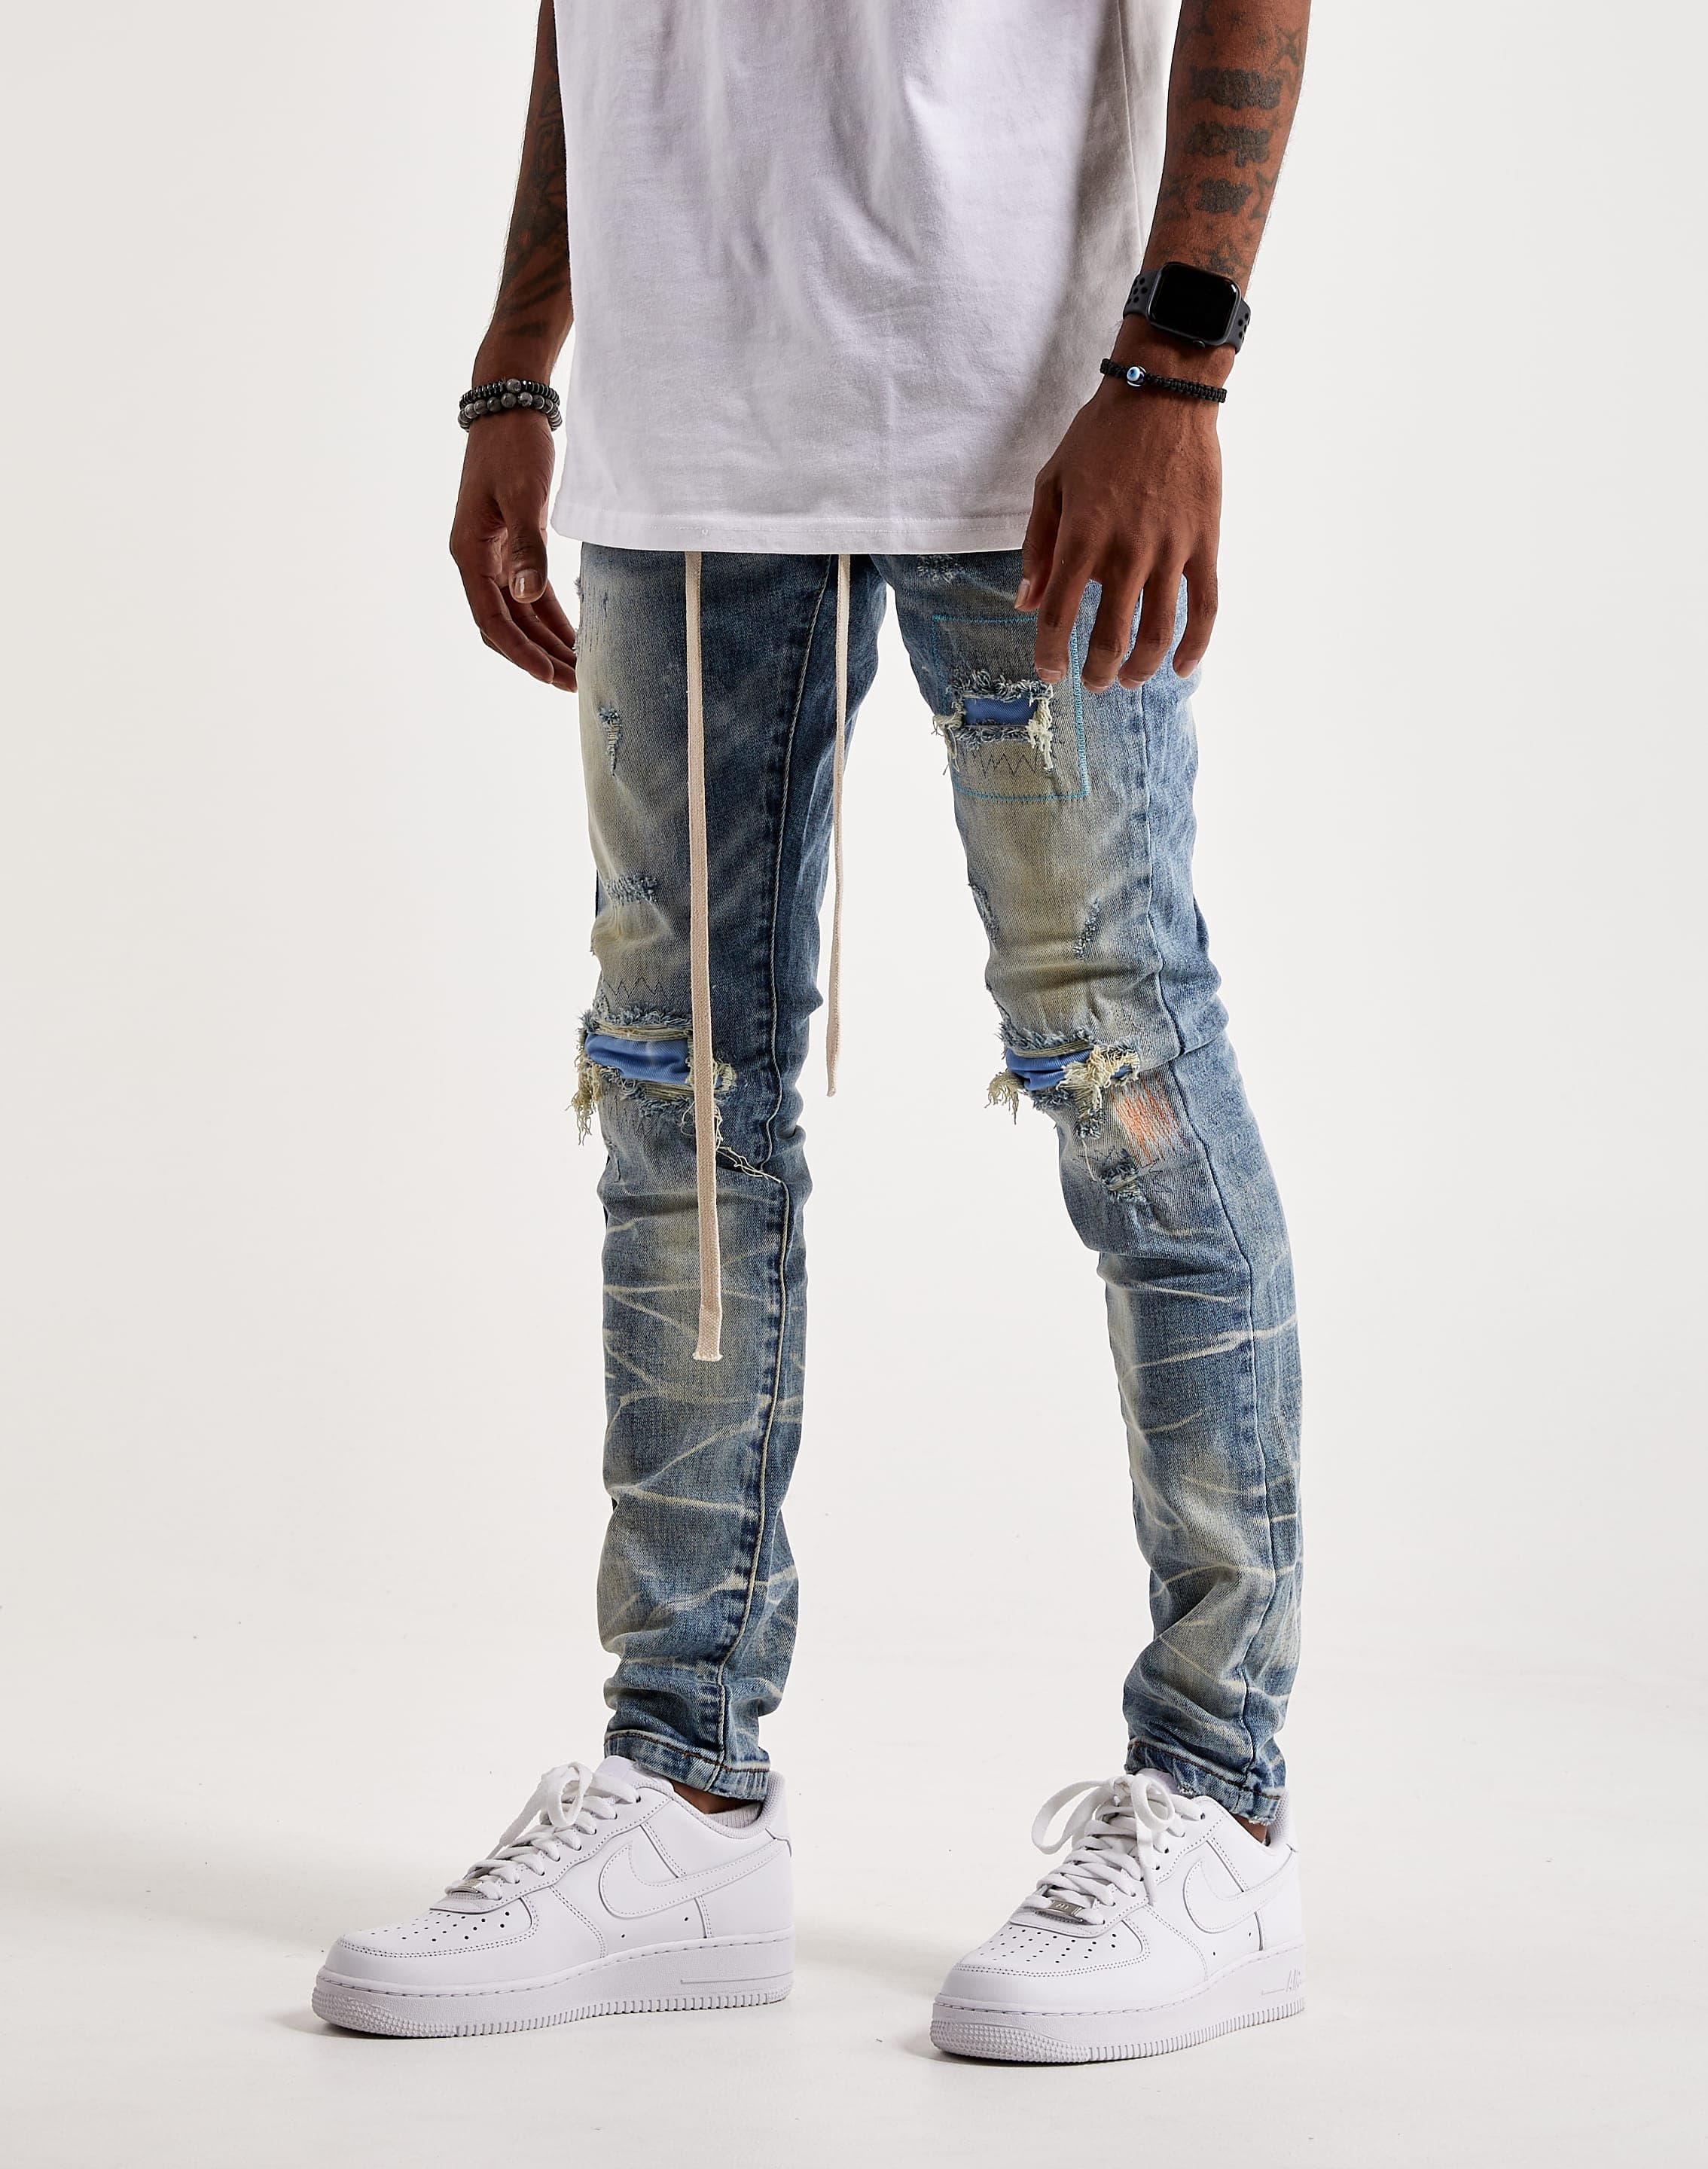 THRT Fiji Denim Jeans – DTLR